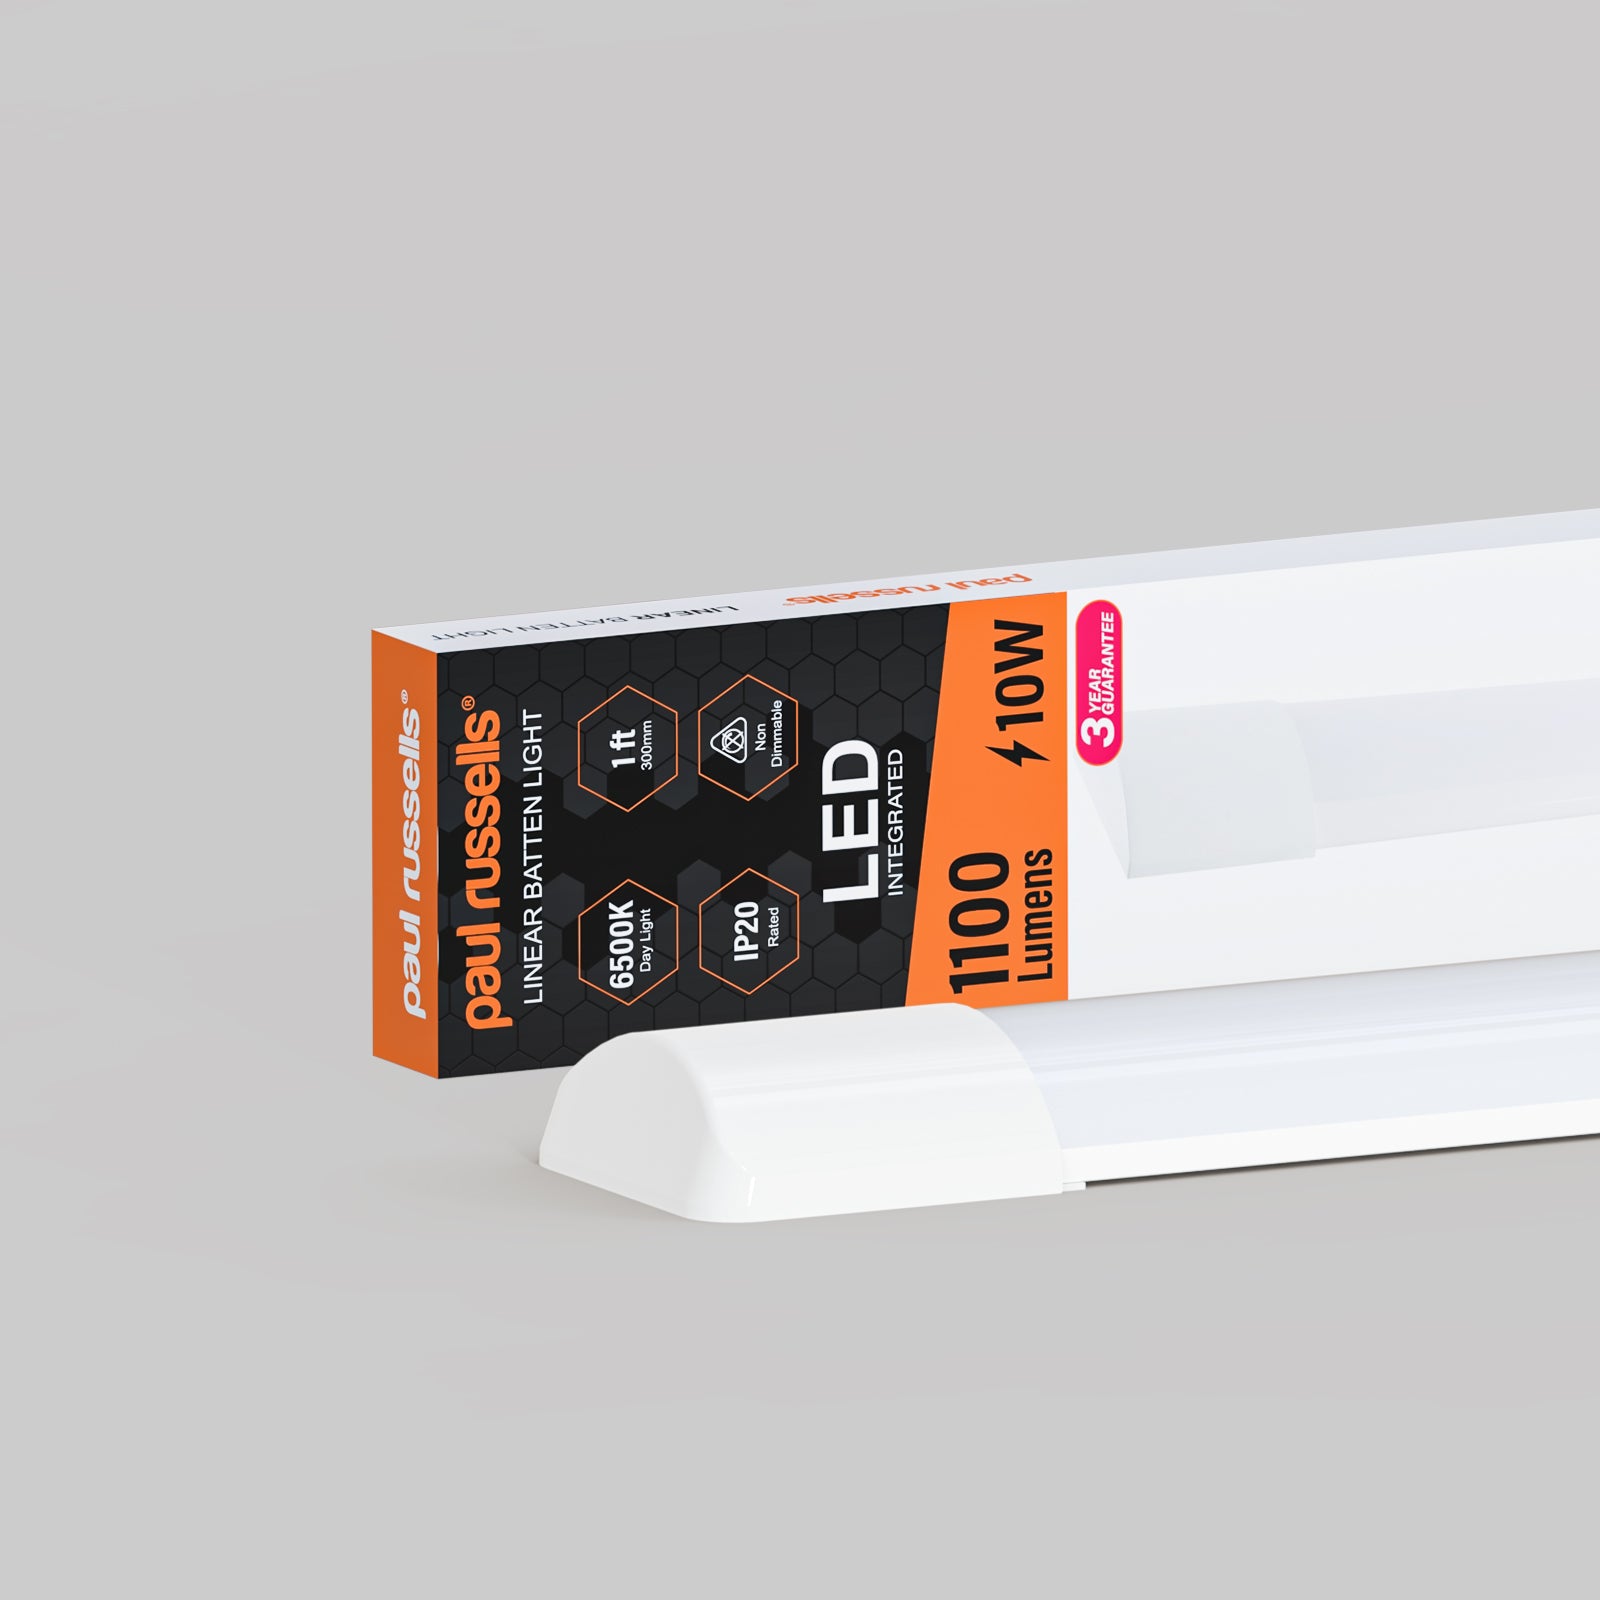 10W LED Batten Light, 1ft Ceiling Fitting Tube Light, 1100 Lumen, 6500K Day Light, Fluorescent Lighting Replacement